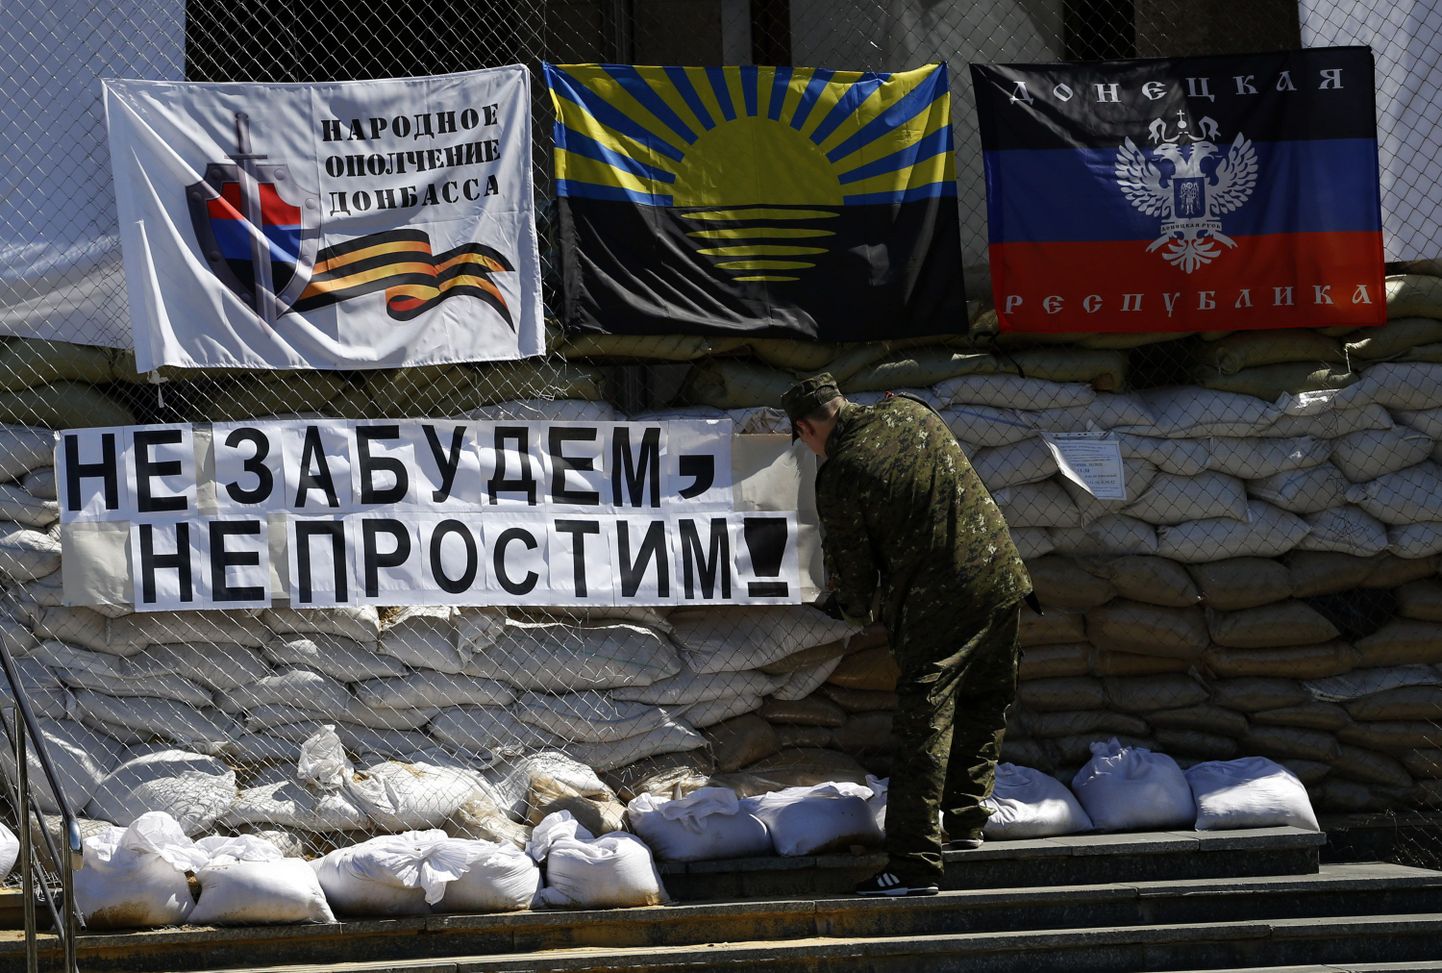 Антитеррористическая операция, проводимая силовиками на юго-востоке Украины, будет продолжена вне зависимости от проведения референдума о самоопределении в самопровозглашенной «Донецкой народной республике».